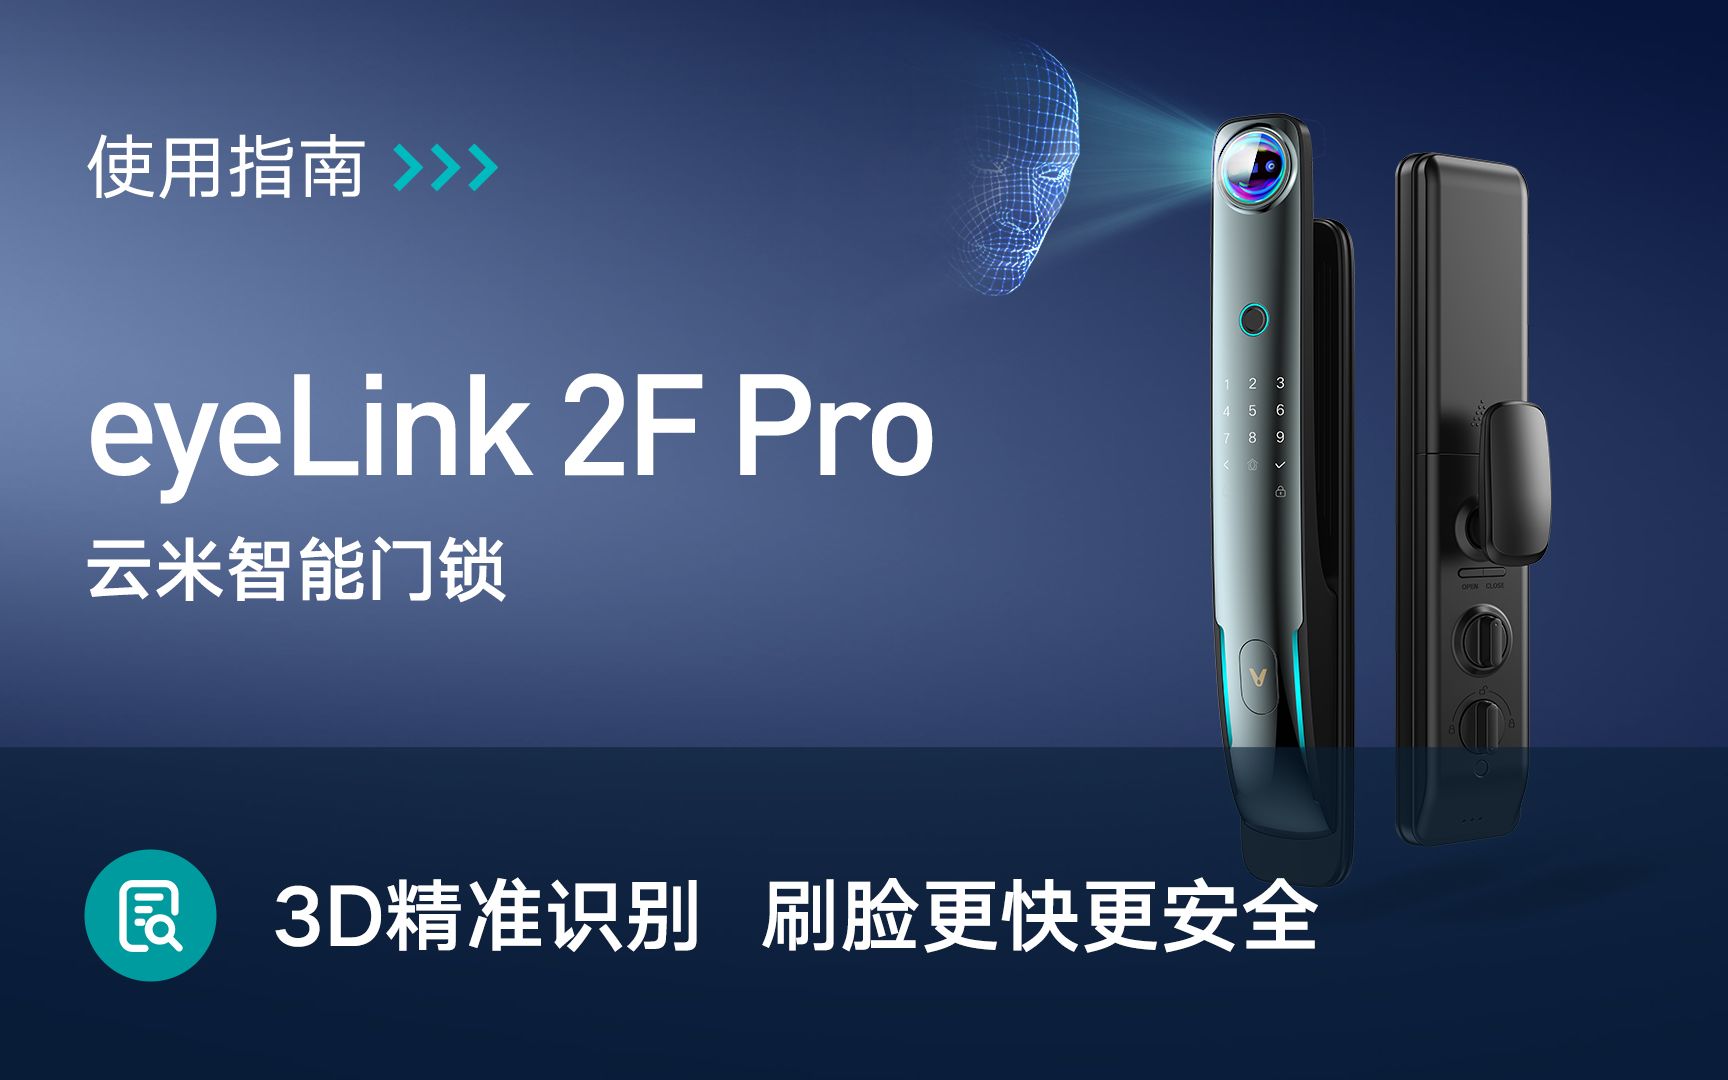 云米AI人脸智能门锁eyeLink 2F Pro使用方法视频教程